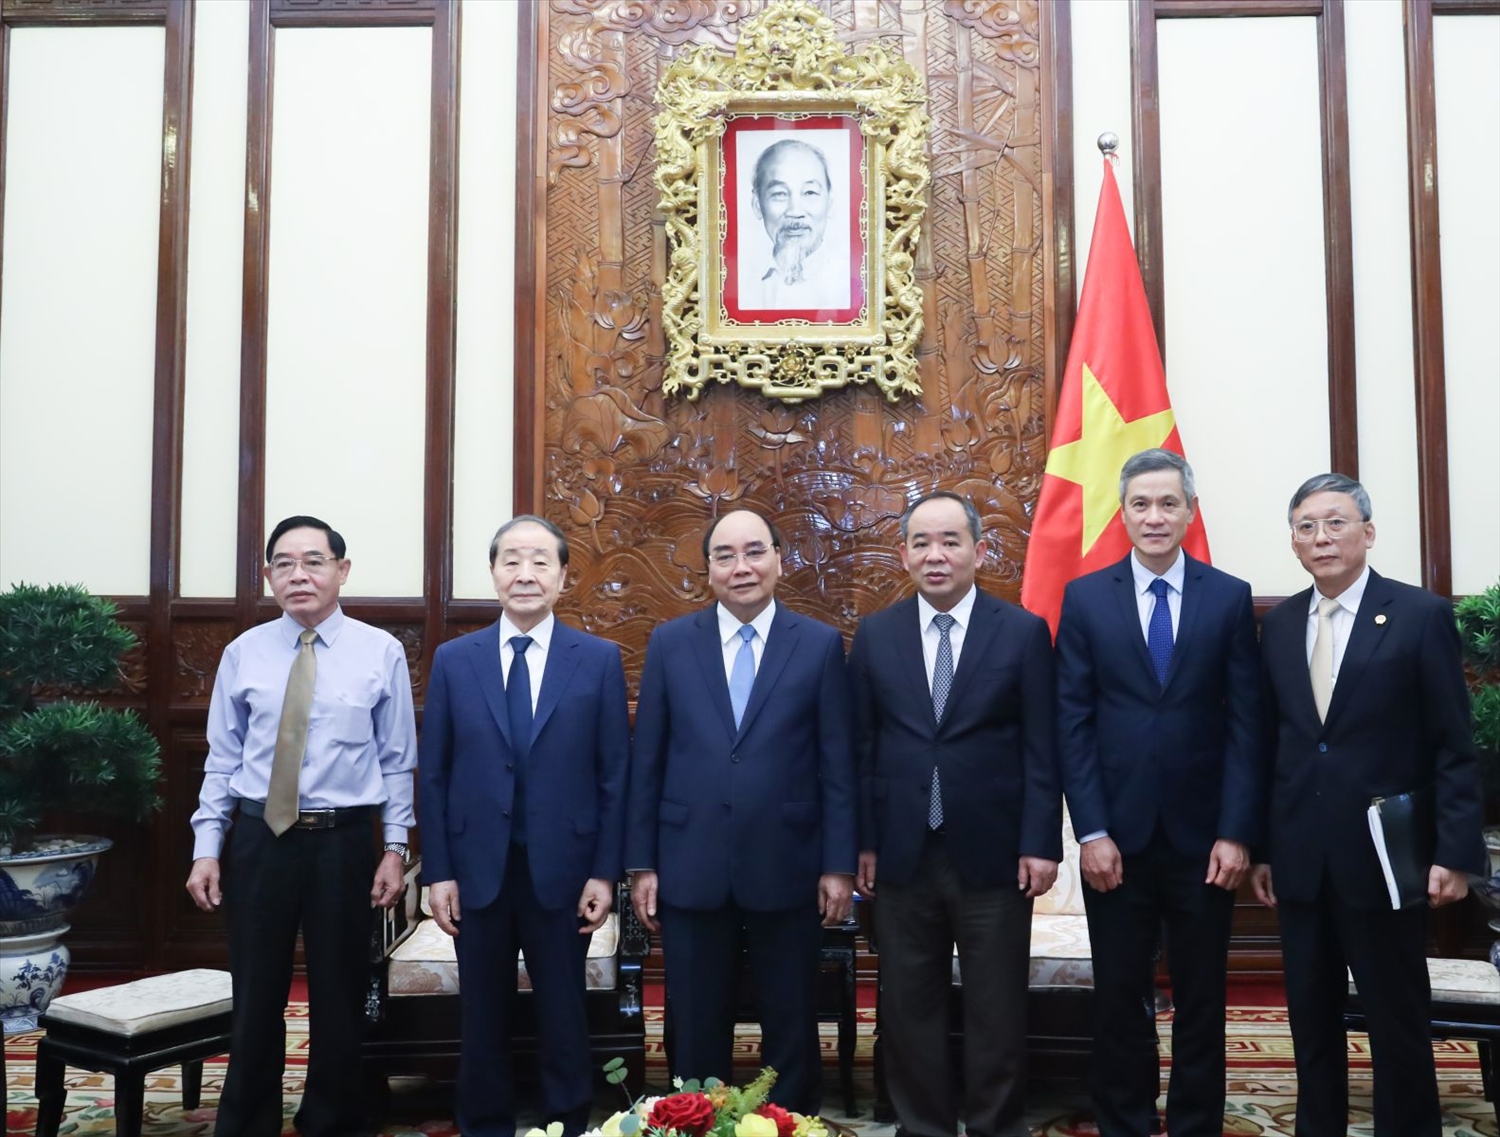 Chủ tịch nước Nguyễn Xuân Phúc với các đại biểu chụp ảnh chung. Ảnh: VPCTN